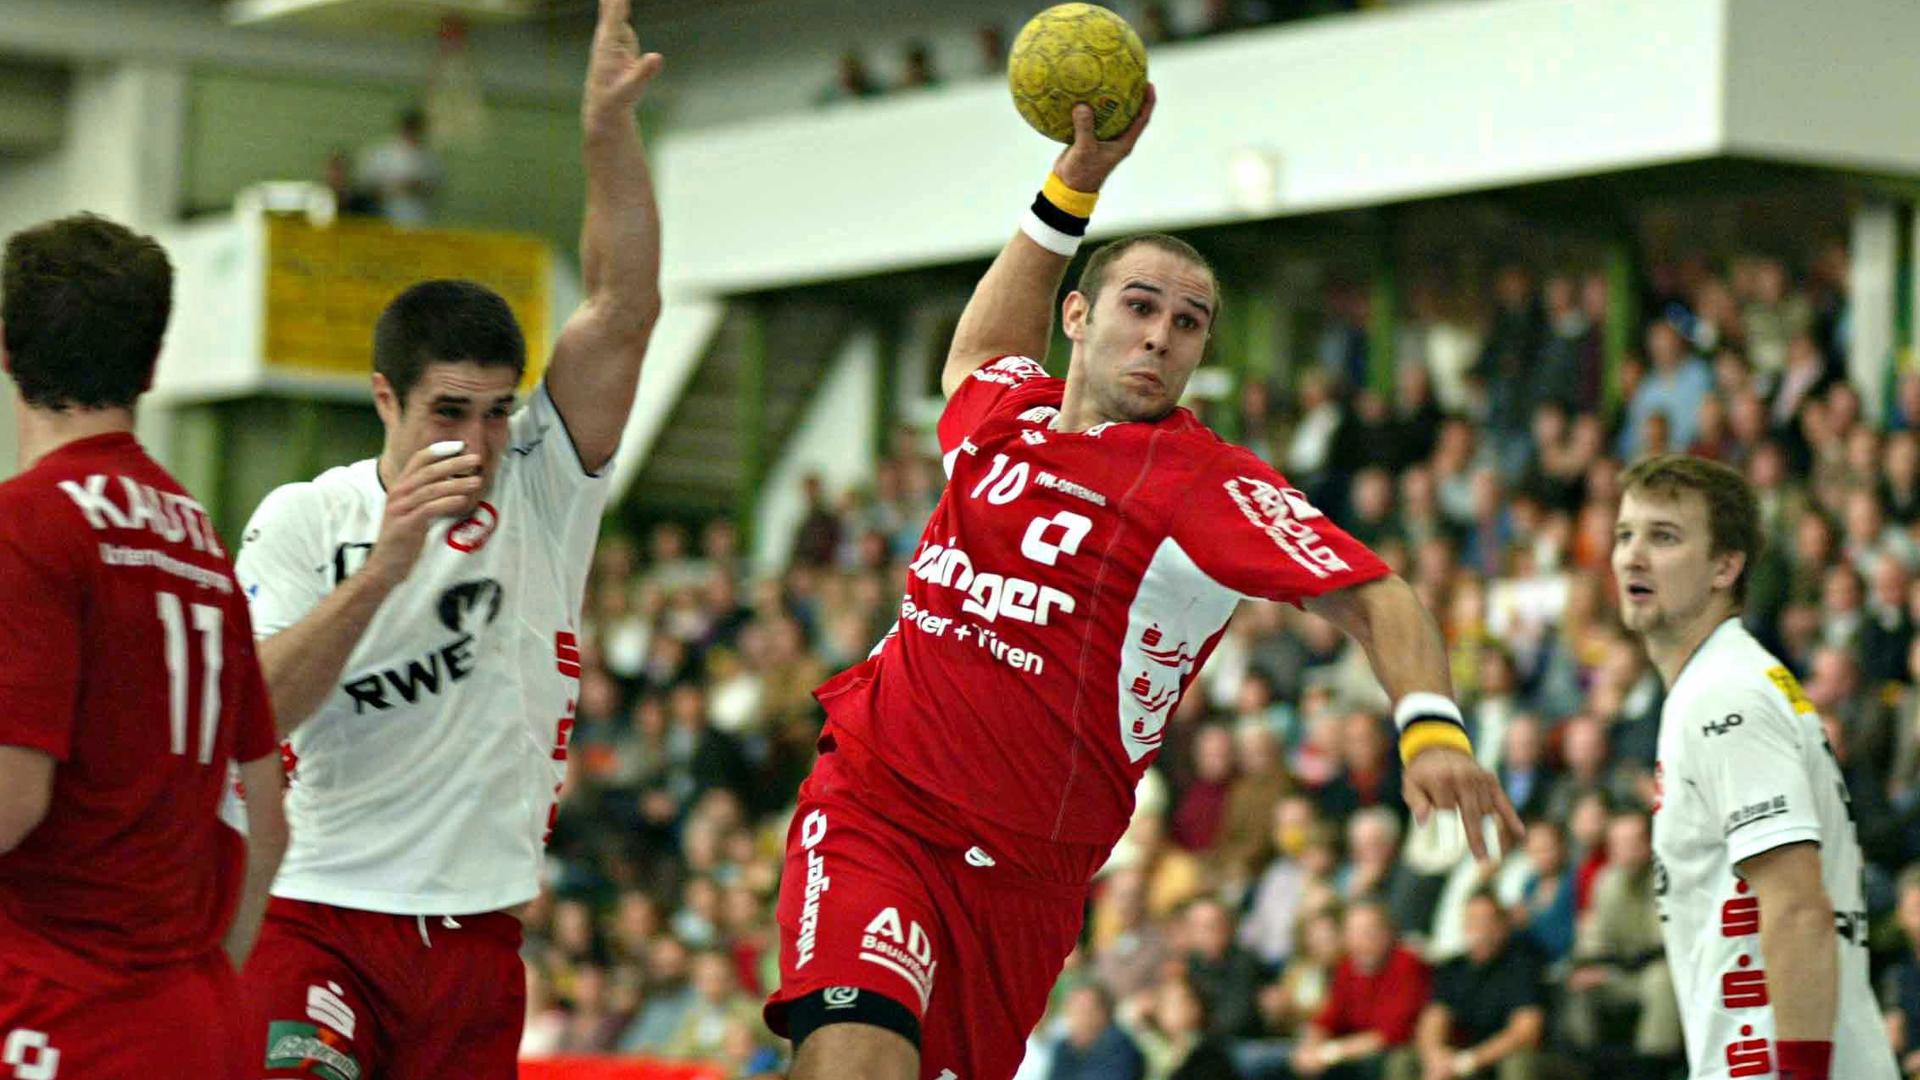 Blick in die Historie: In der Saison 2008/09 wurde in der Willstätter Hanauerlandhalle, in der damals Grzegorz Garbacz im Trikot der HR Ortenau auflief, letztmals um Zweitligapunkte gekämpft.